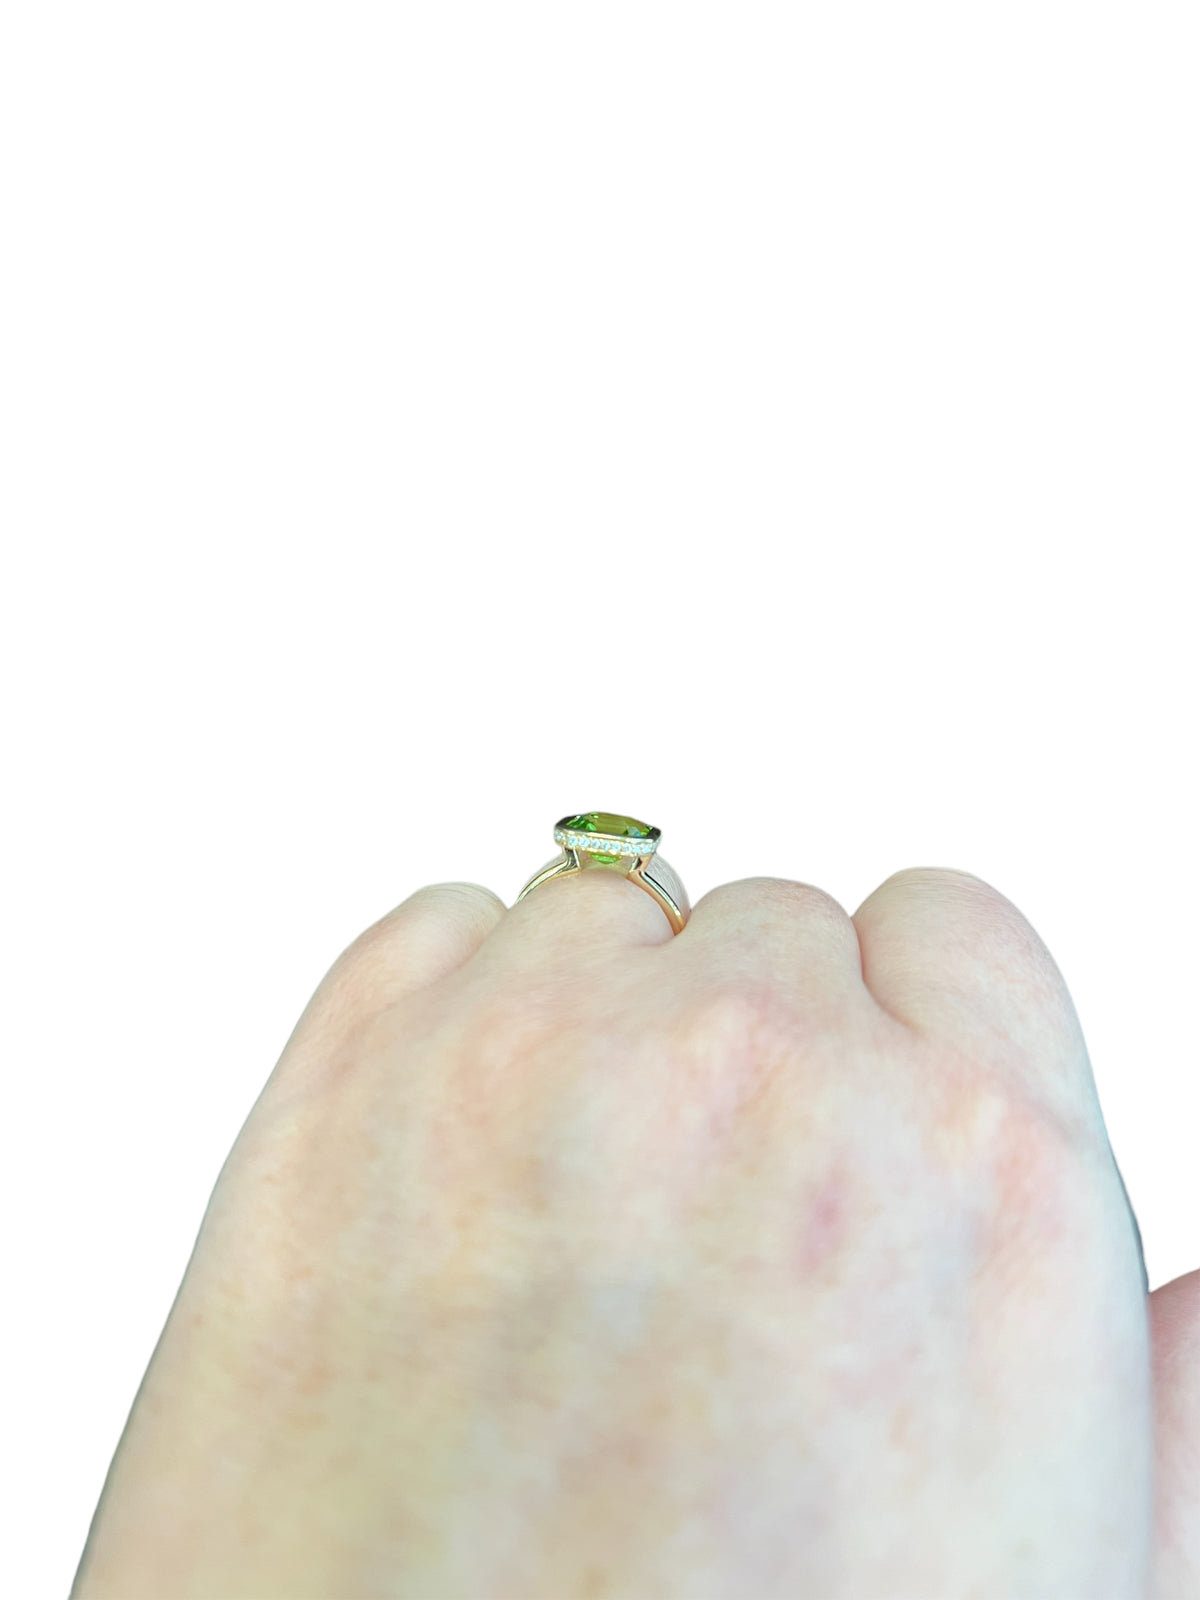 14K Yellow Gold Peridot and Diamond Ring - Size 7